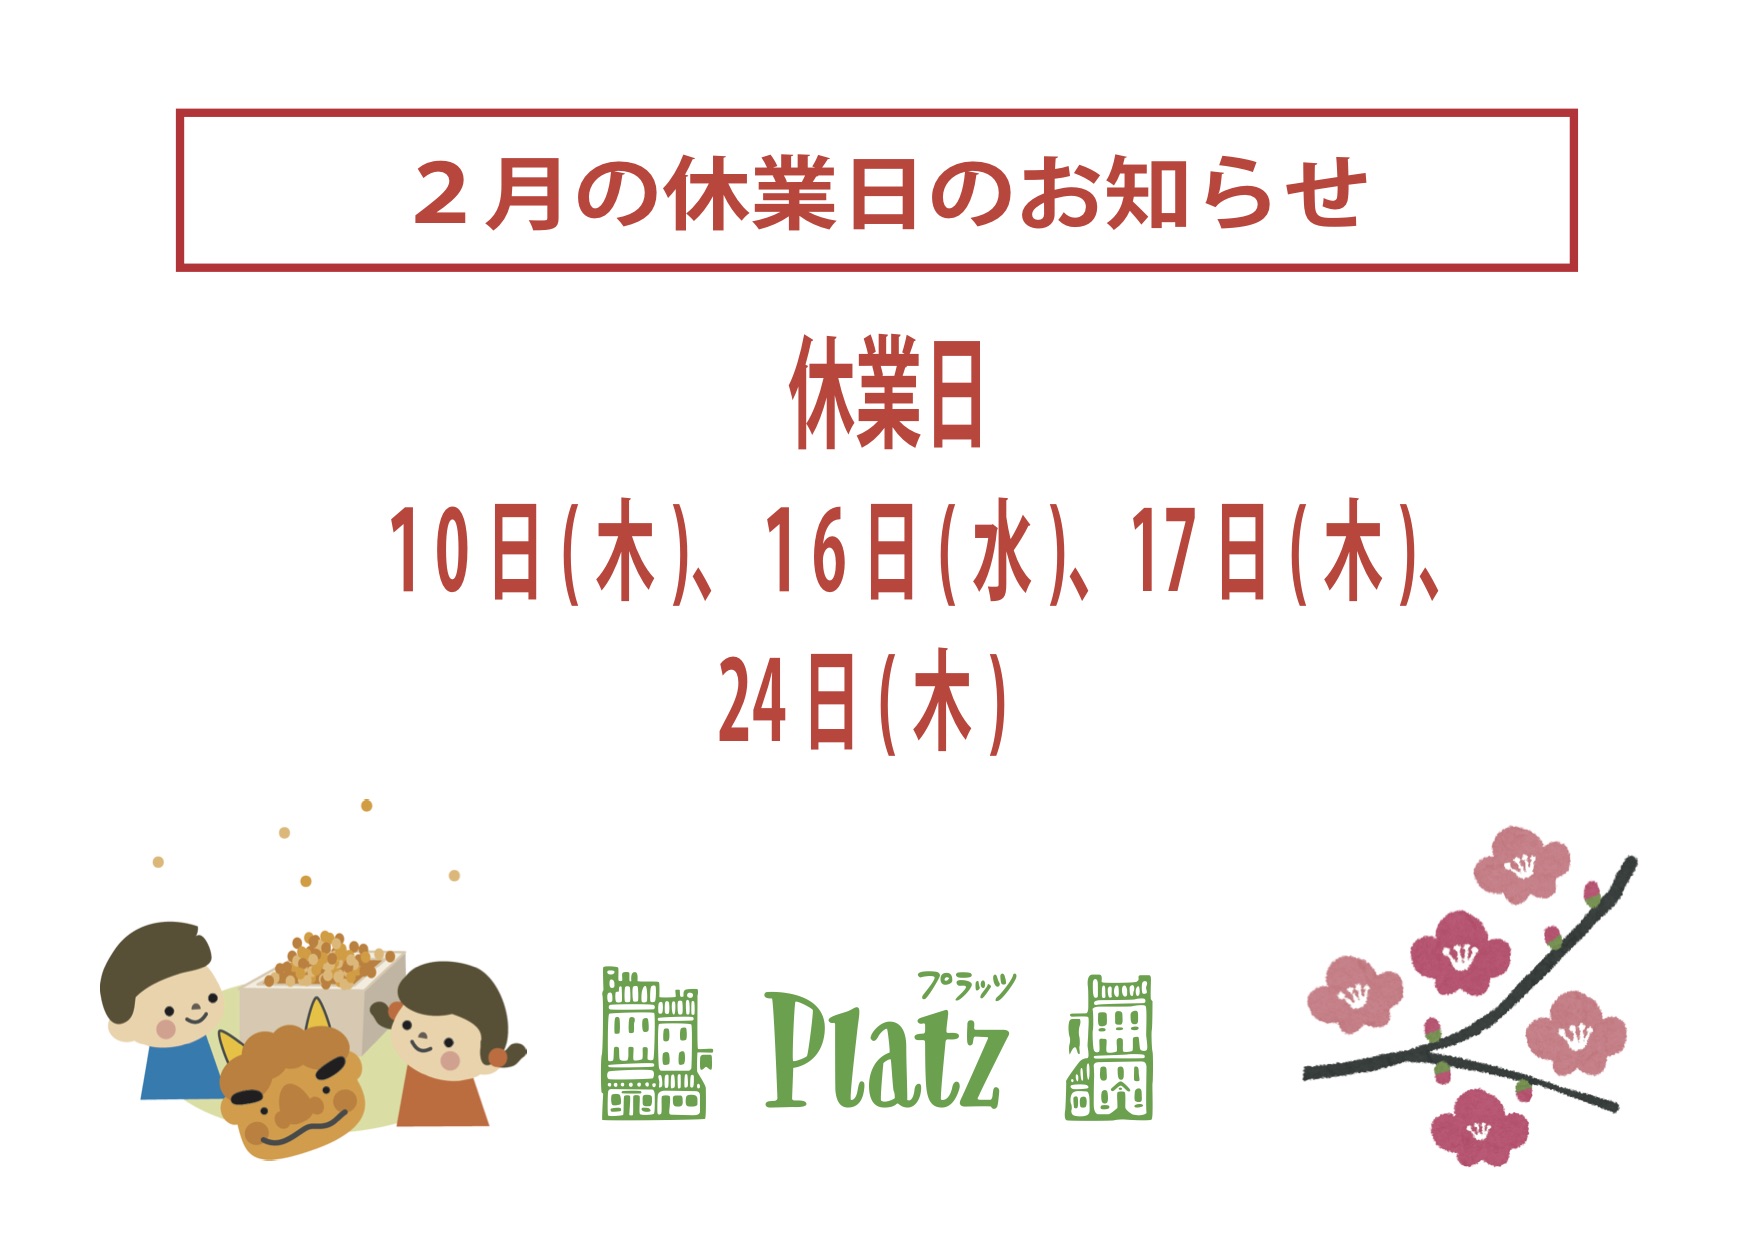 http://www.kyoto-platz.jp/news/images/2022.2%E6%9C%88%E4%BC%91%E6%A5%AD%E6%97%A5.jpg